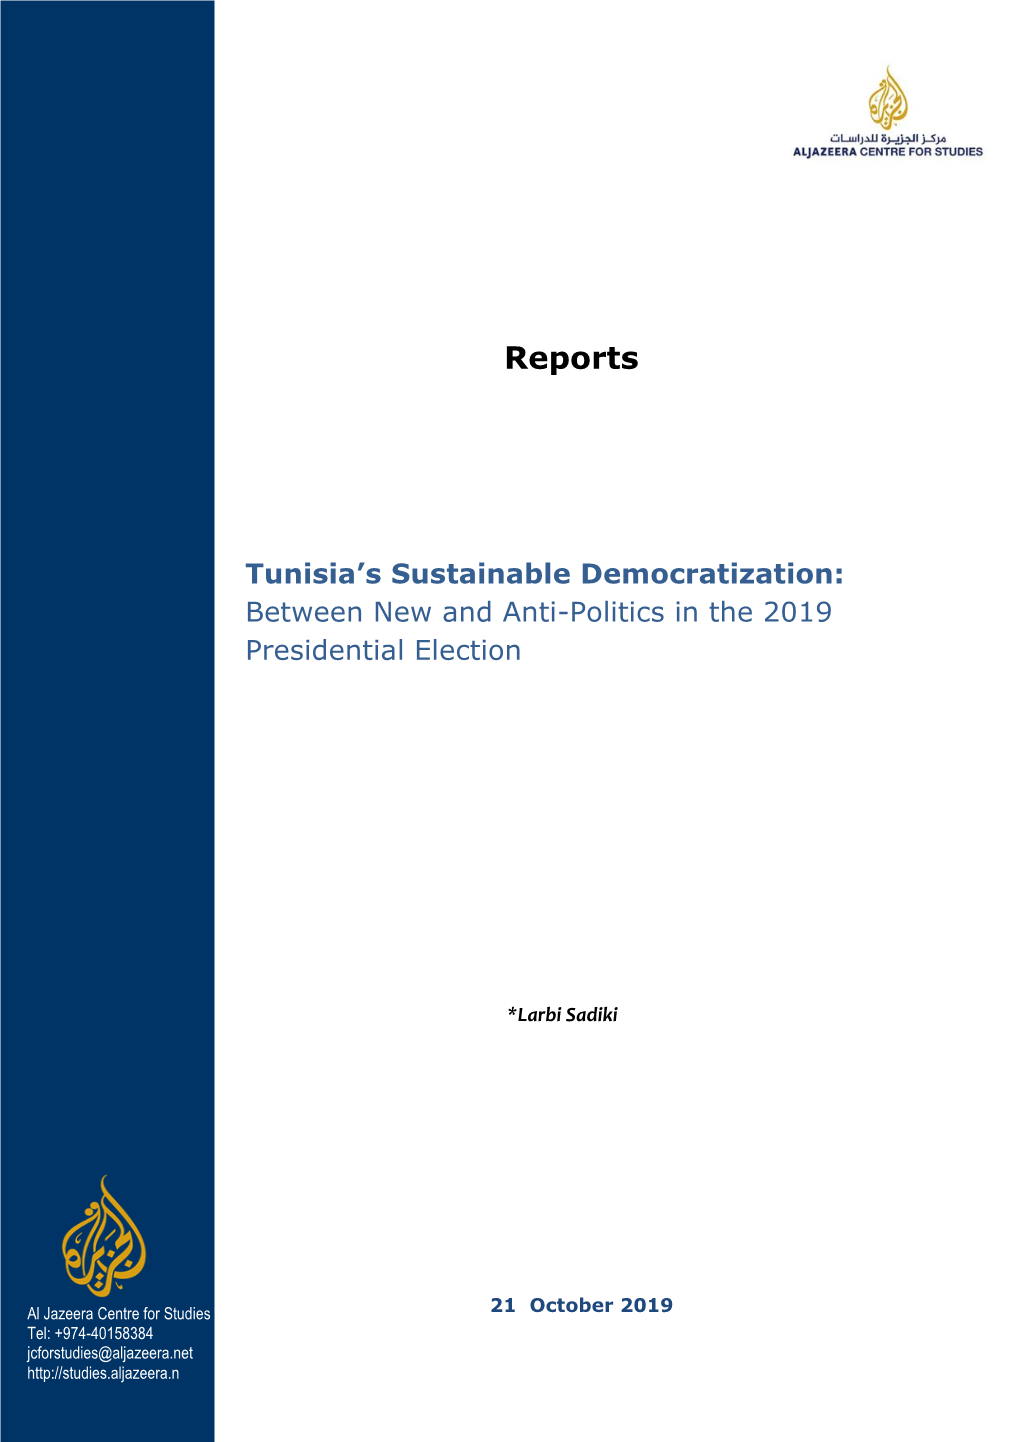 Tunisia's Sustainable Democratization